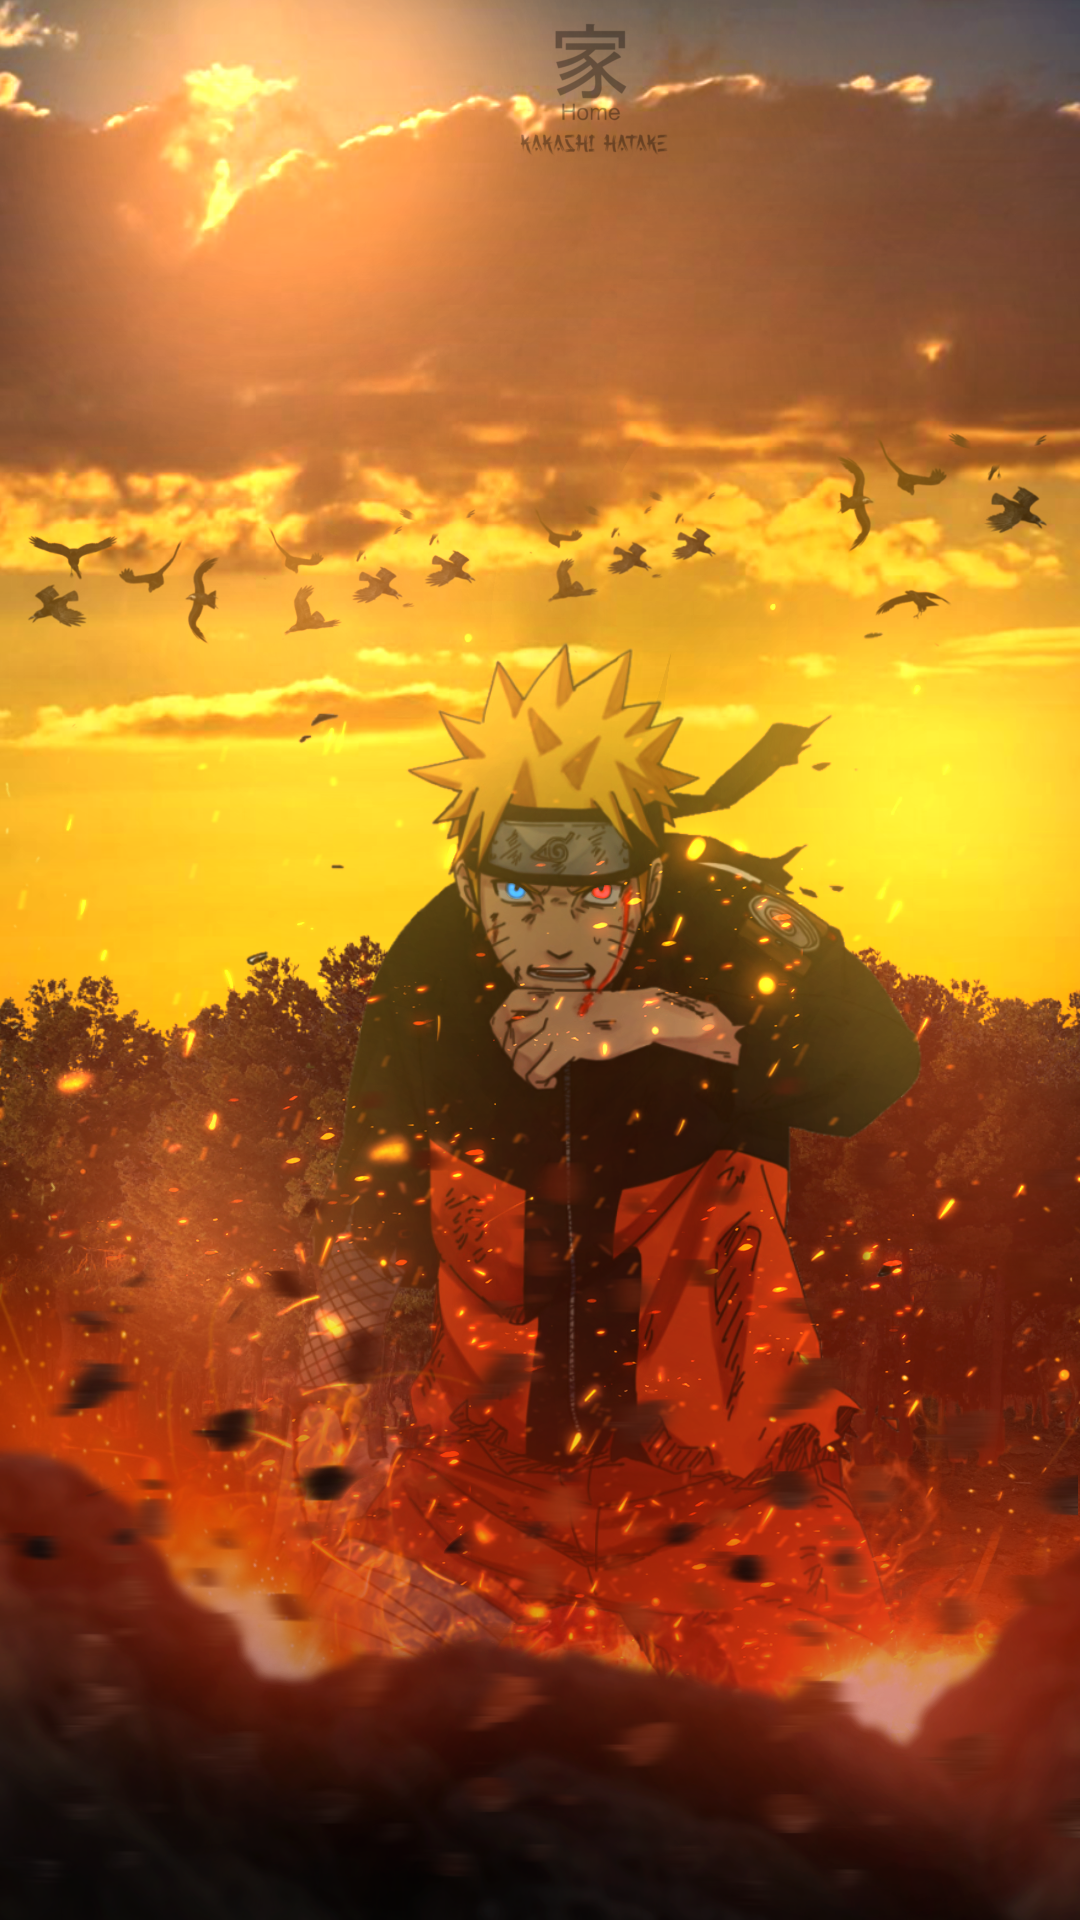 Với Naruto壁纸, bạn sẽ được chiêm ngưỡng vẻ đẹp khó cưỡng của Naruto và các nhân vật trong series. Nền tảng hình ảnh lớn và chất lượng cao đem tới trải nghiệm tuyệt vời cho người xem.